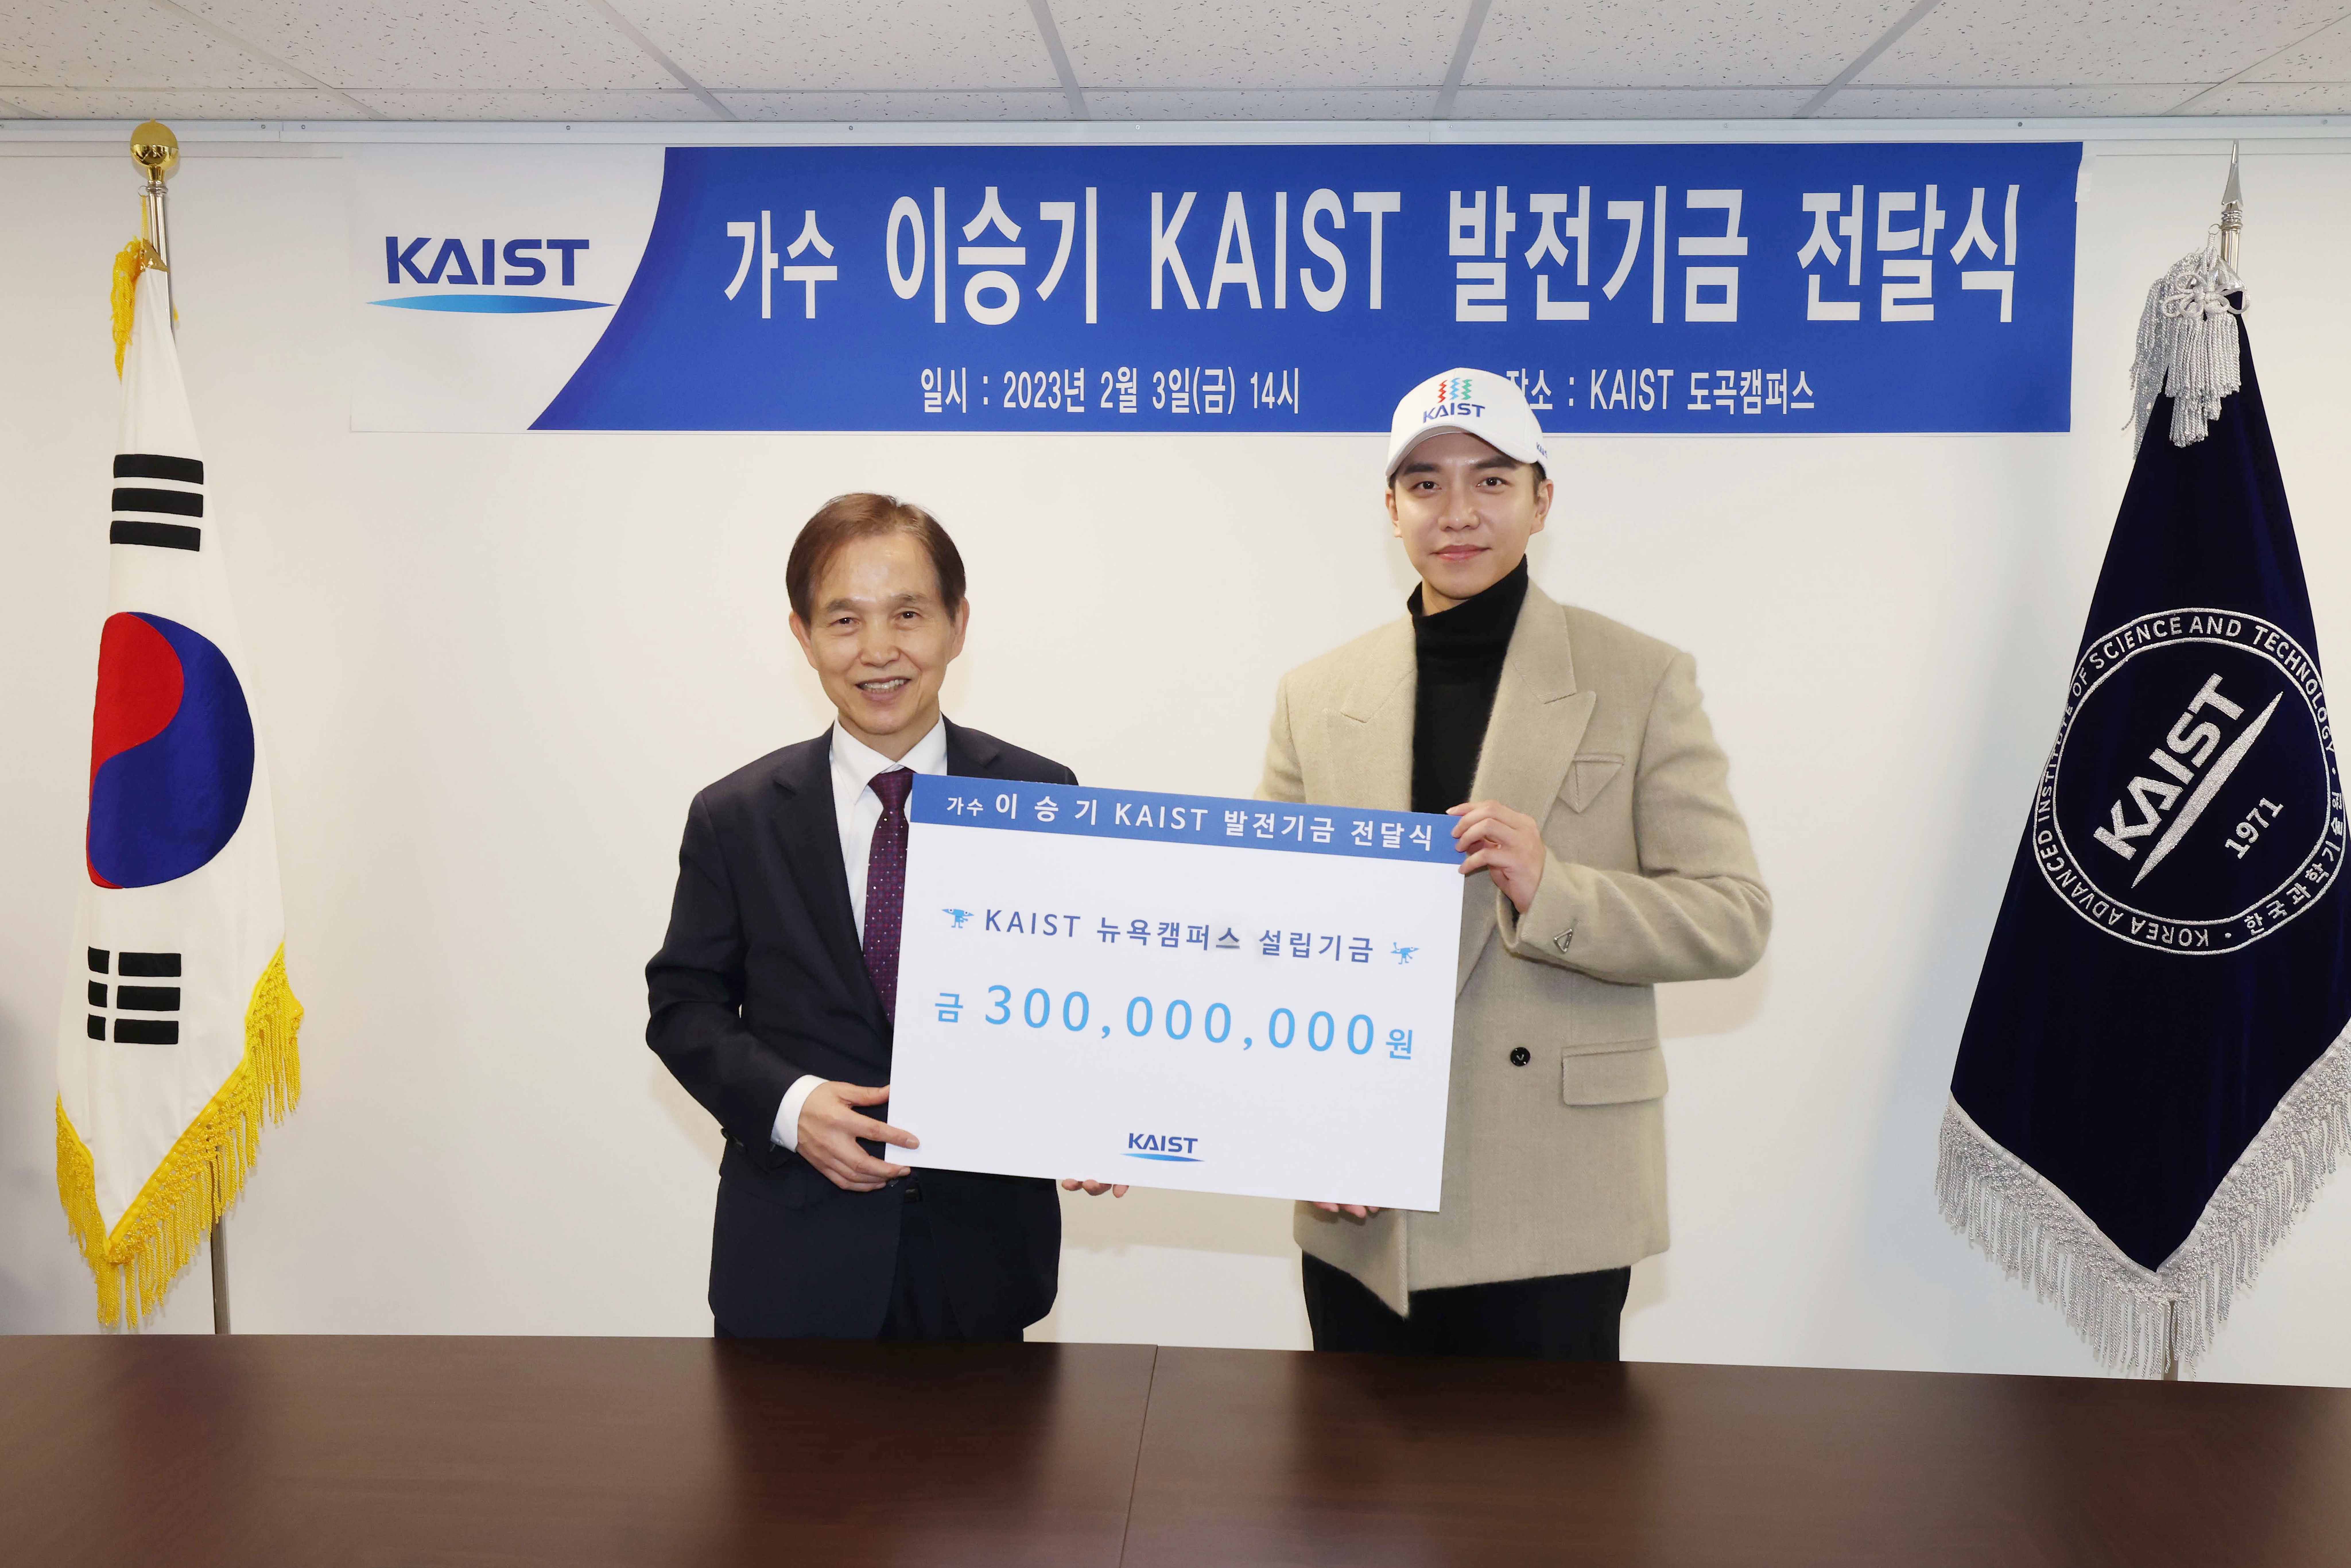 이승기(오른쪽)가 3일 서울 도곡캠퍼스에서 이광형 총장에게 발전기금을 전달하고 있다.